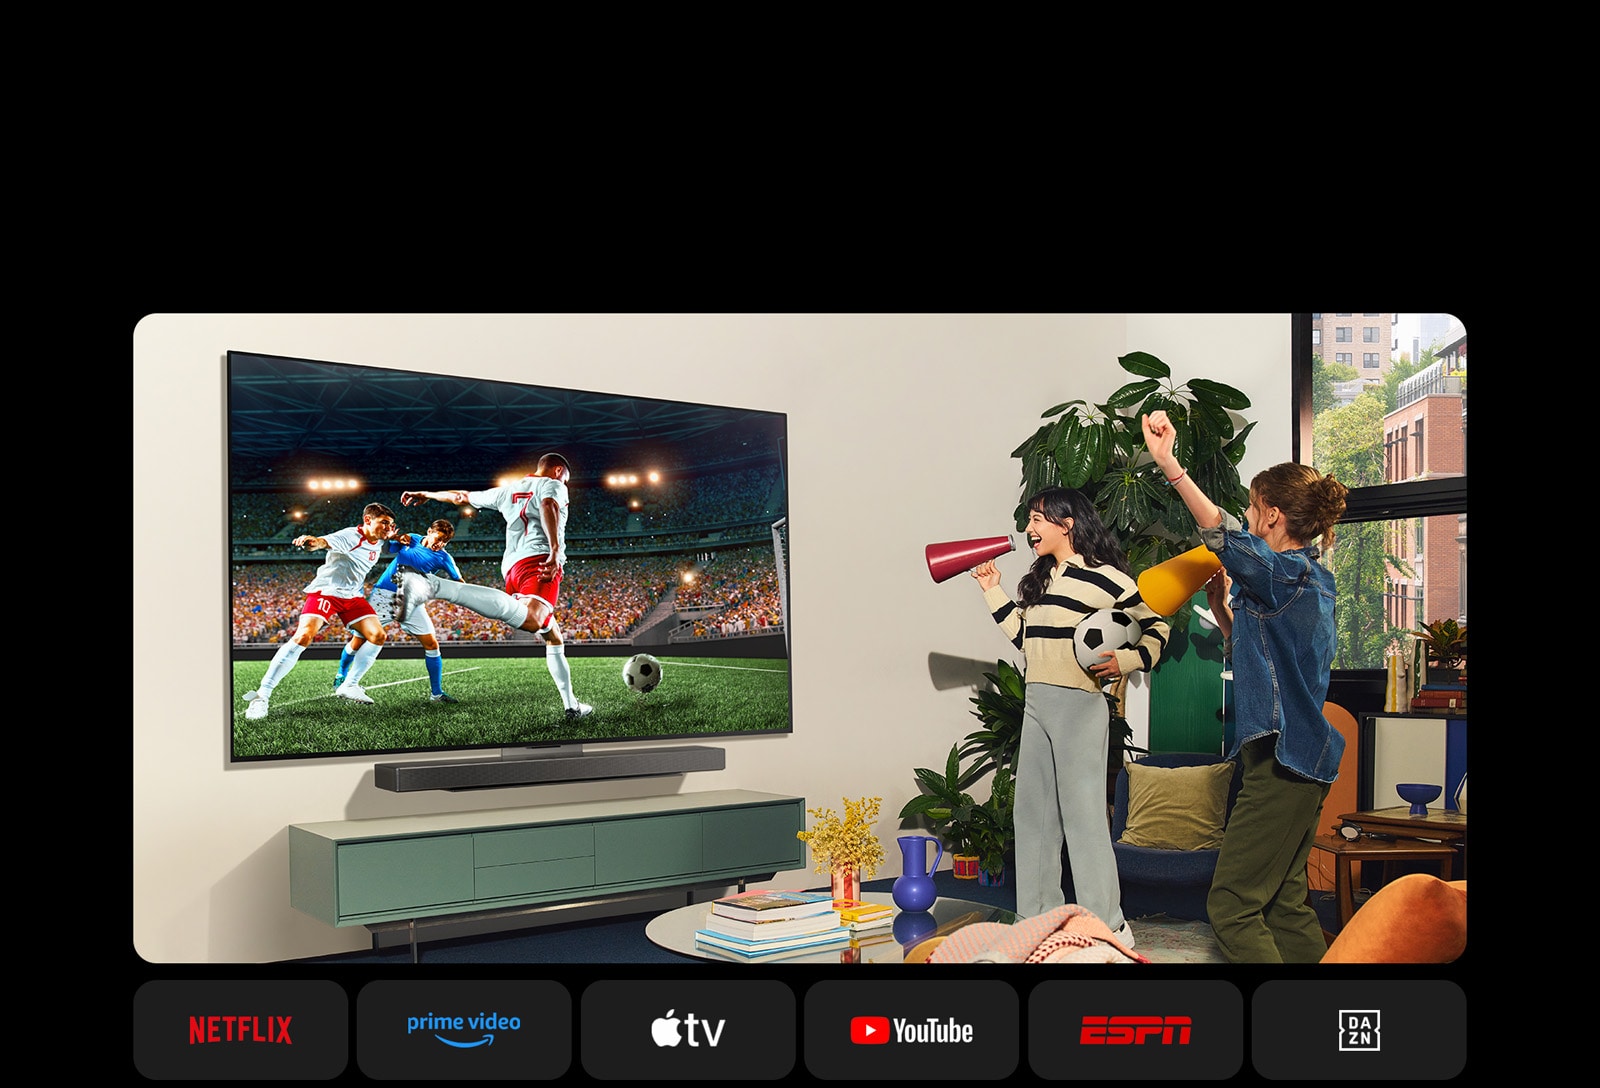 Dvi moterys žiūri futbolo rungtynes jaukioje gyvenamojoje erdvėje. Viena moteris laiko futbolo kamuolį, o abi geltonais ir raudonais garsiakalbiais palaiko savo komandą. Toliau pateikiami šie logotipai. Netflix, Amazon Prime Video, Apple TV, Youtube, ESPN, ir DAZN.